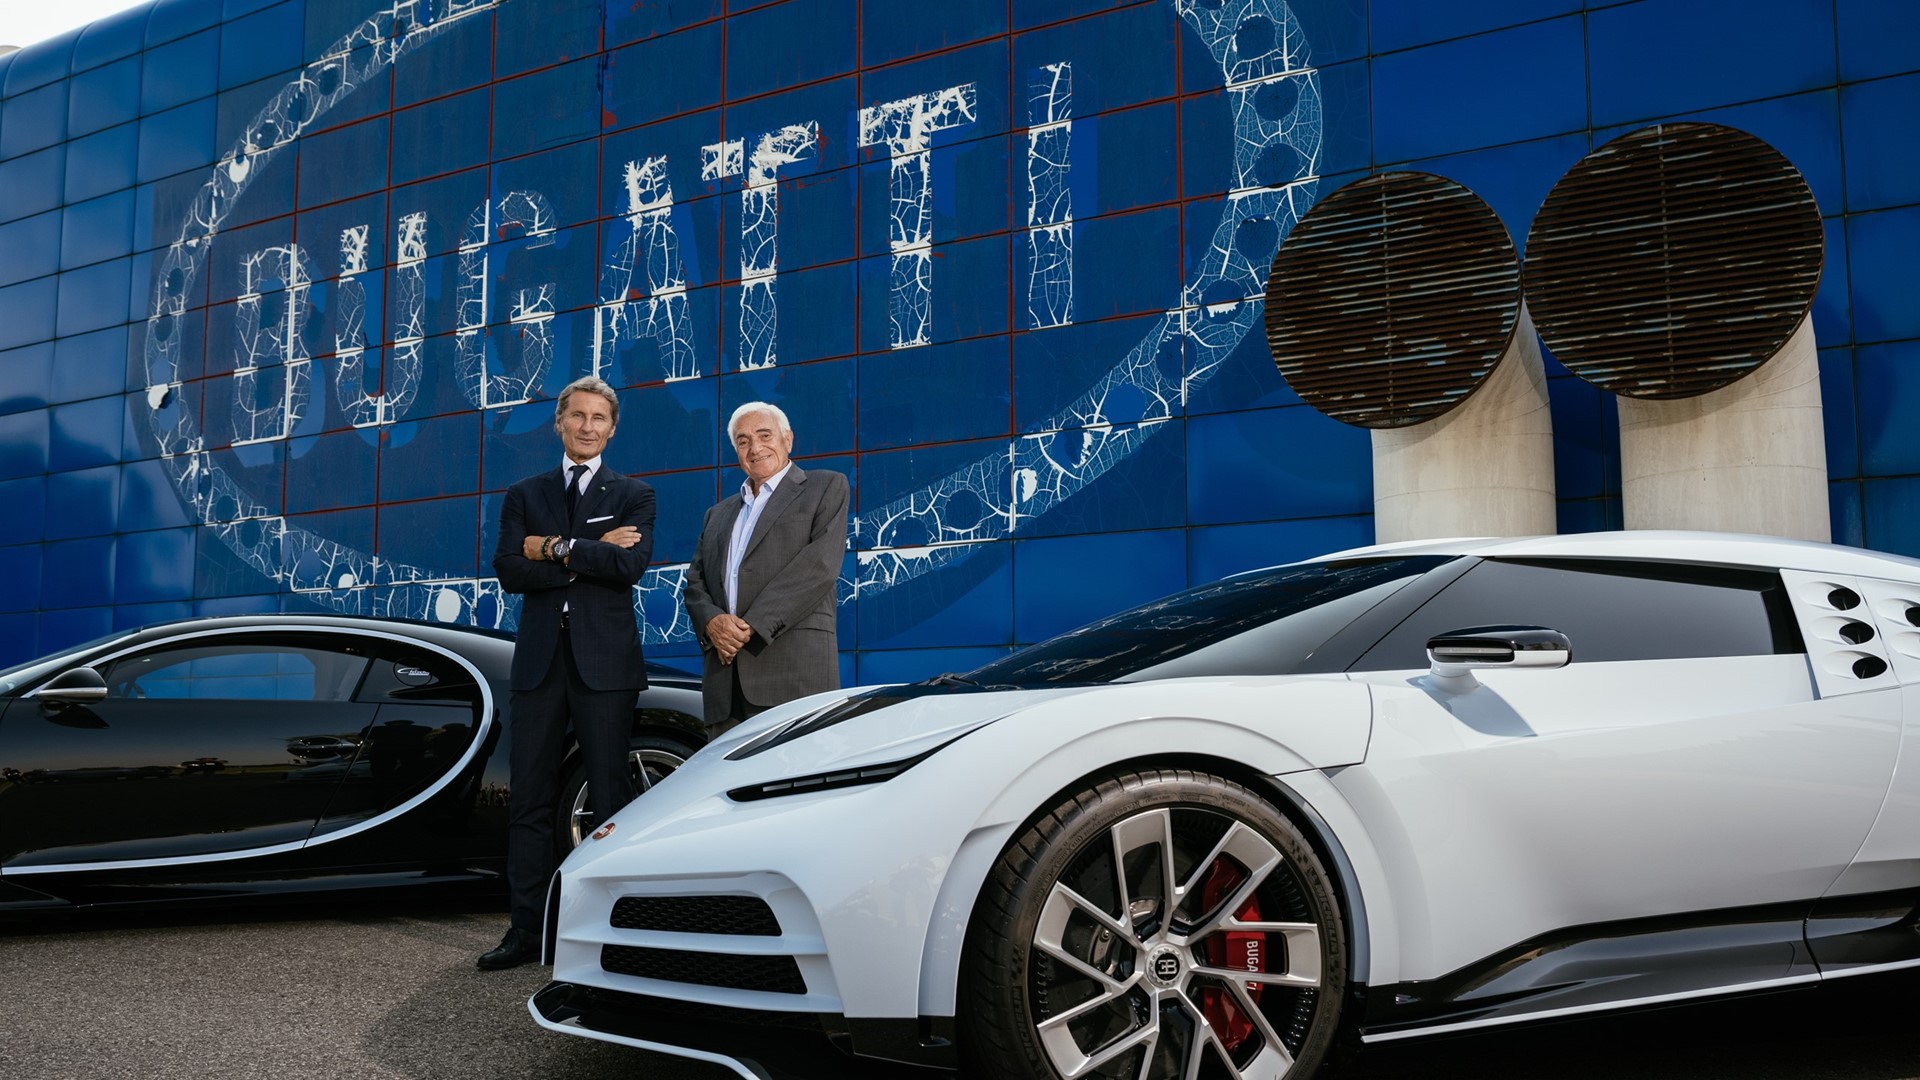 Bugatti - Bugatti added a new photo — in Italy.